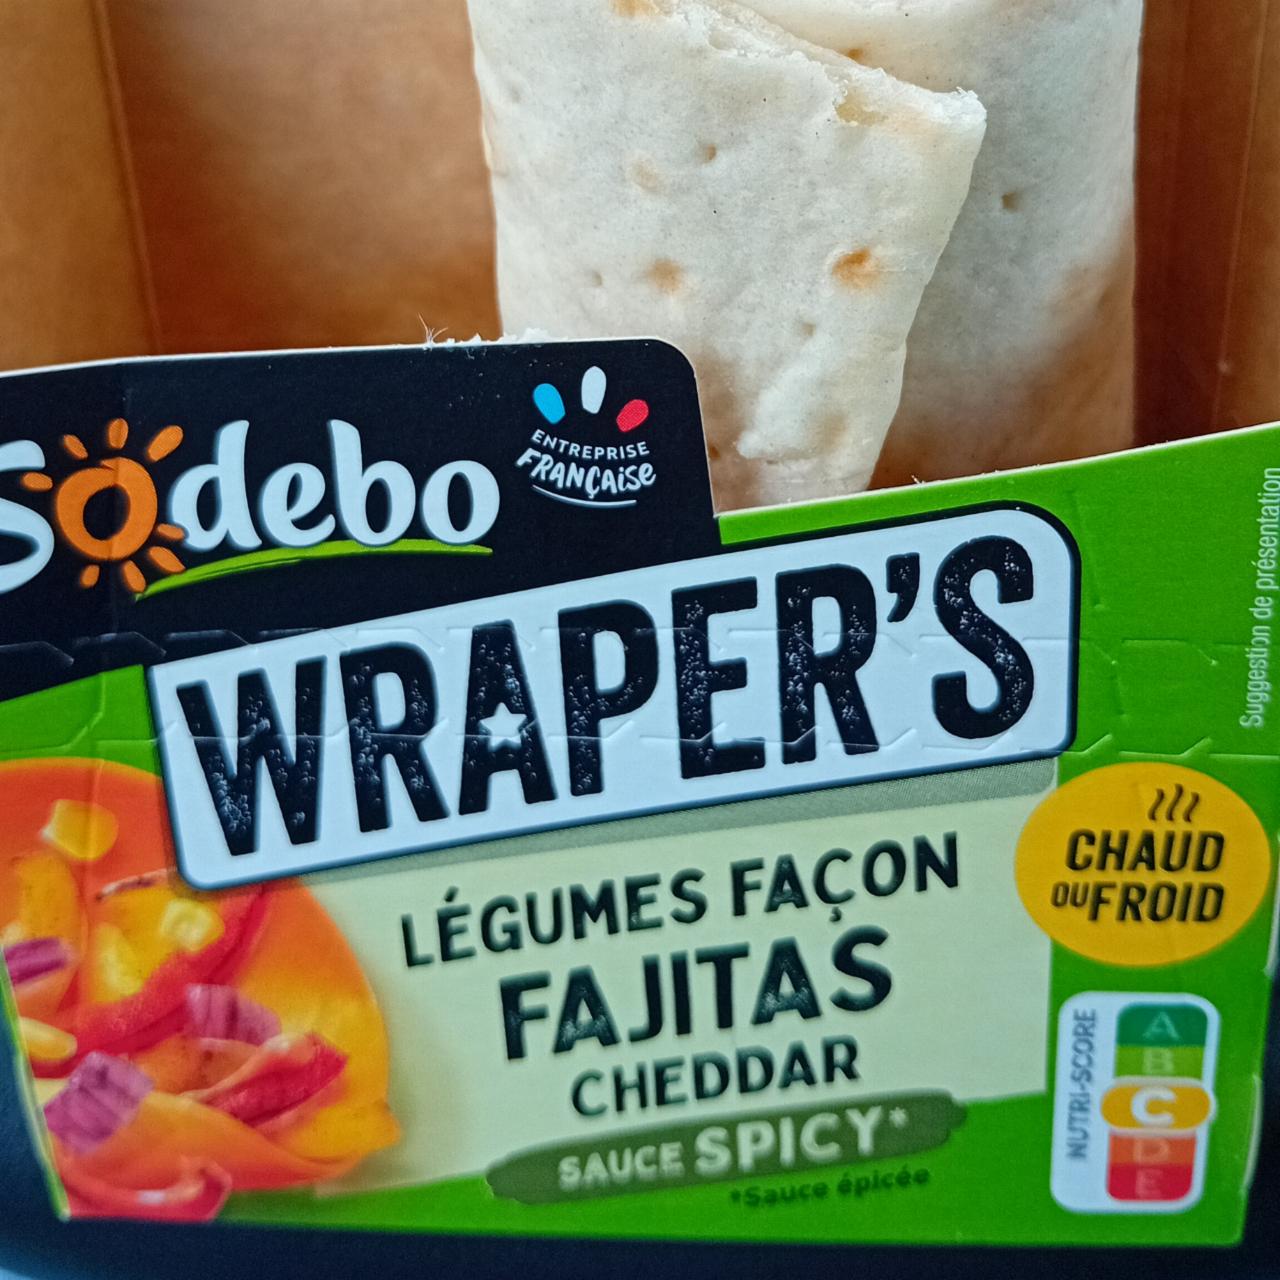 Fotografie - Wraper's Légumes Façon Fajitas Cheddar Sodebo